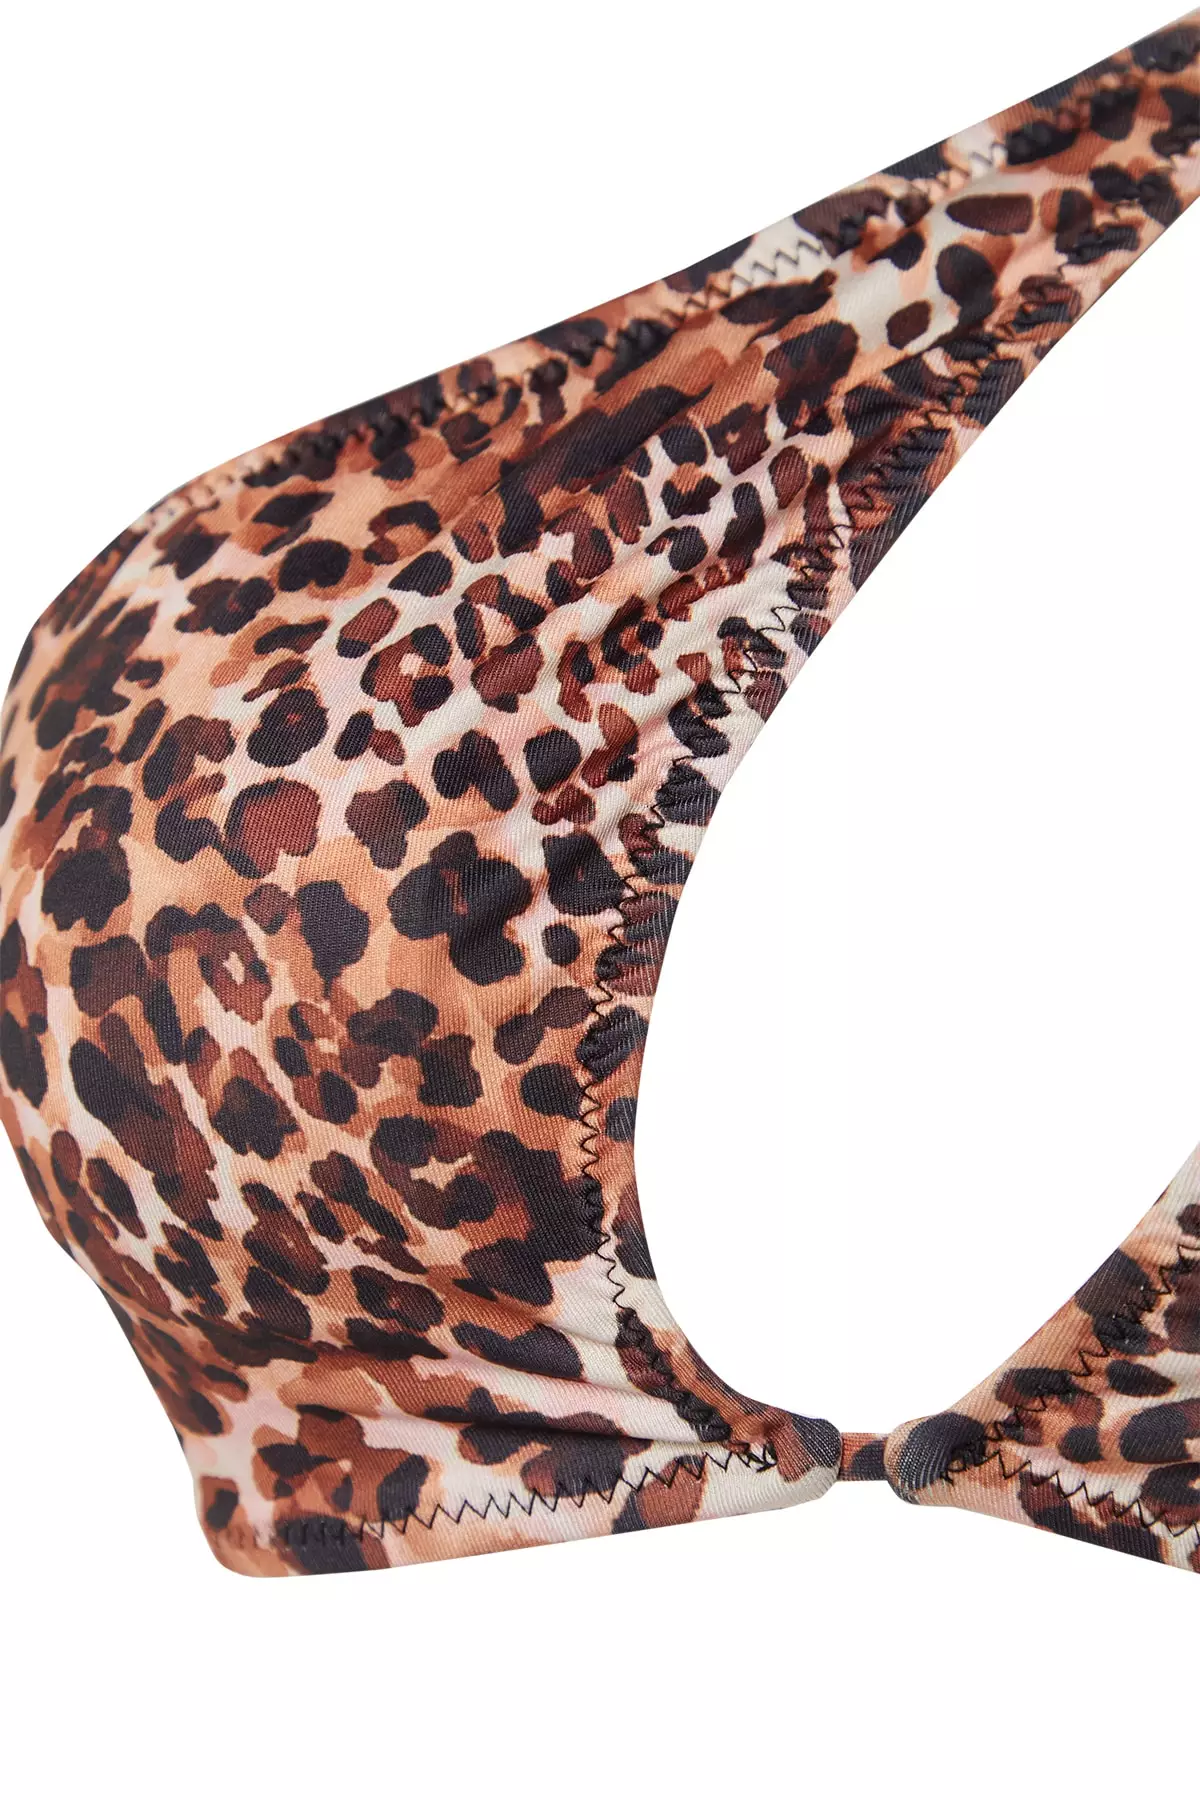 Victoria's Secret Cardholder - Brown - Leopard - Trendyol